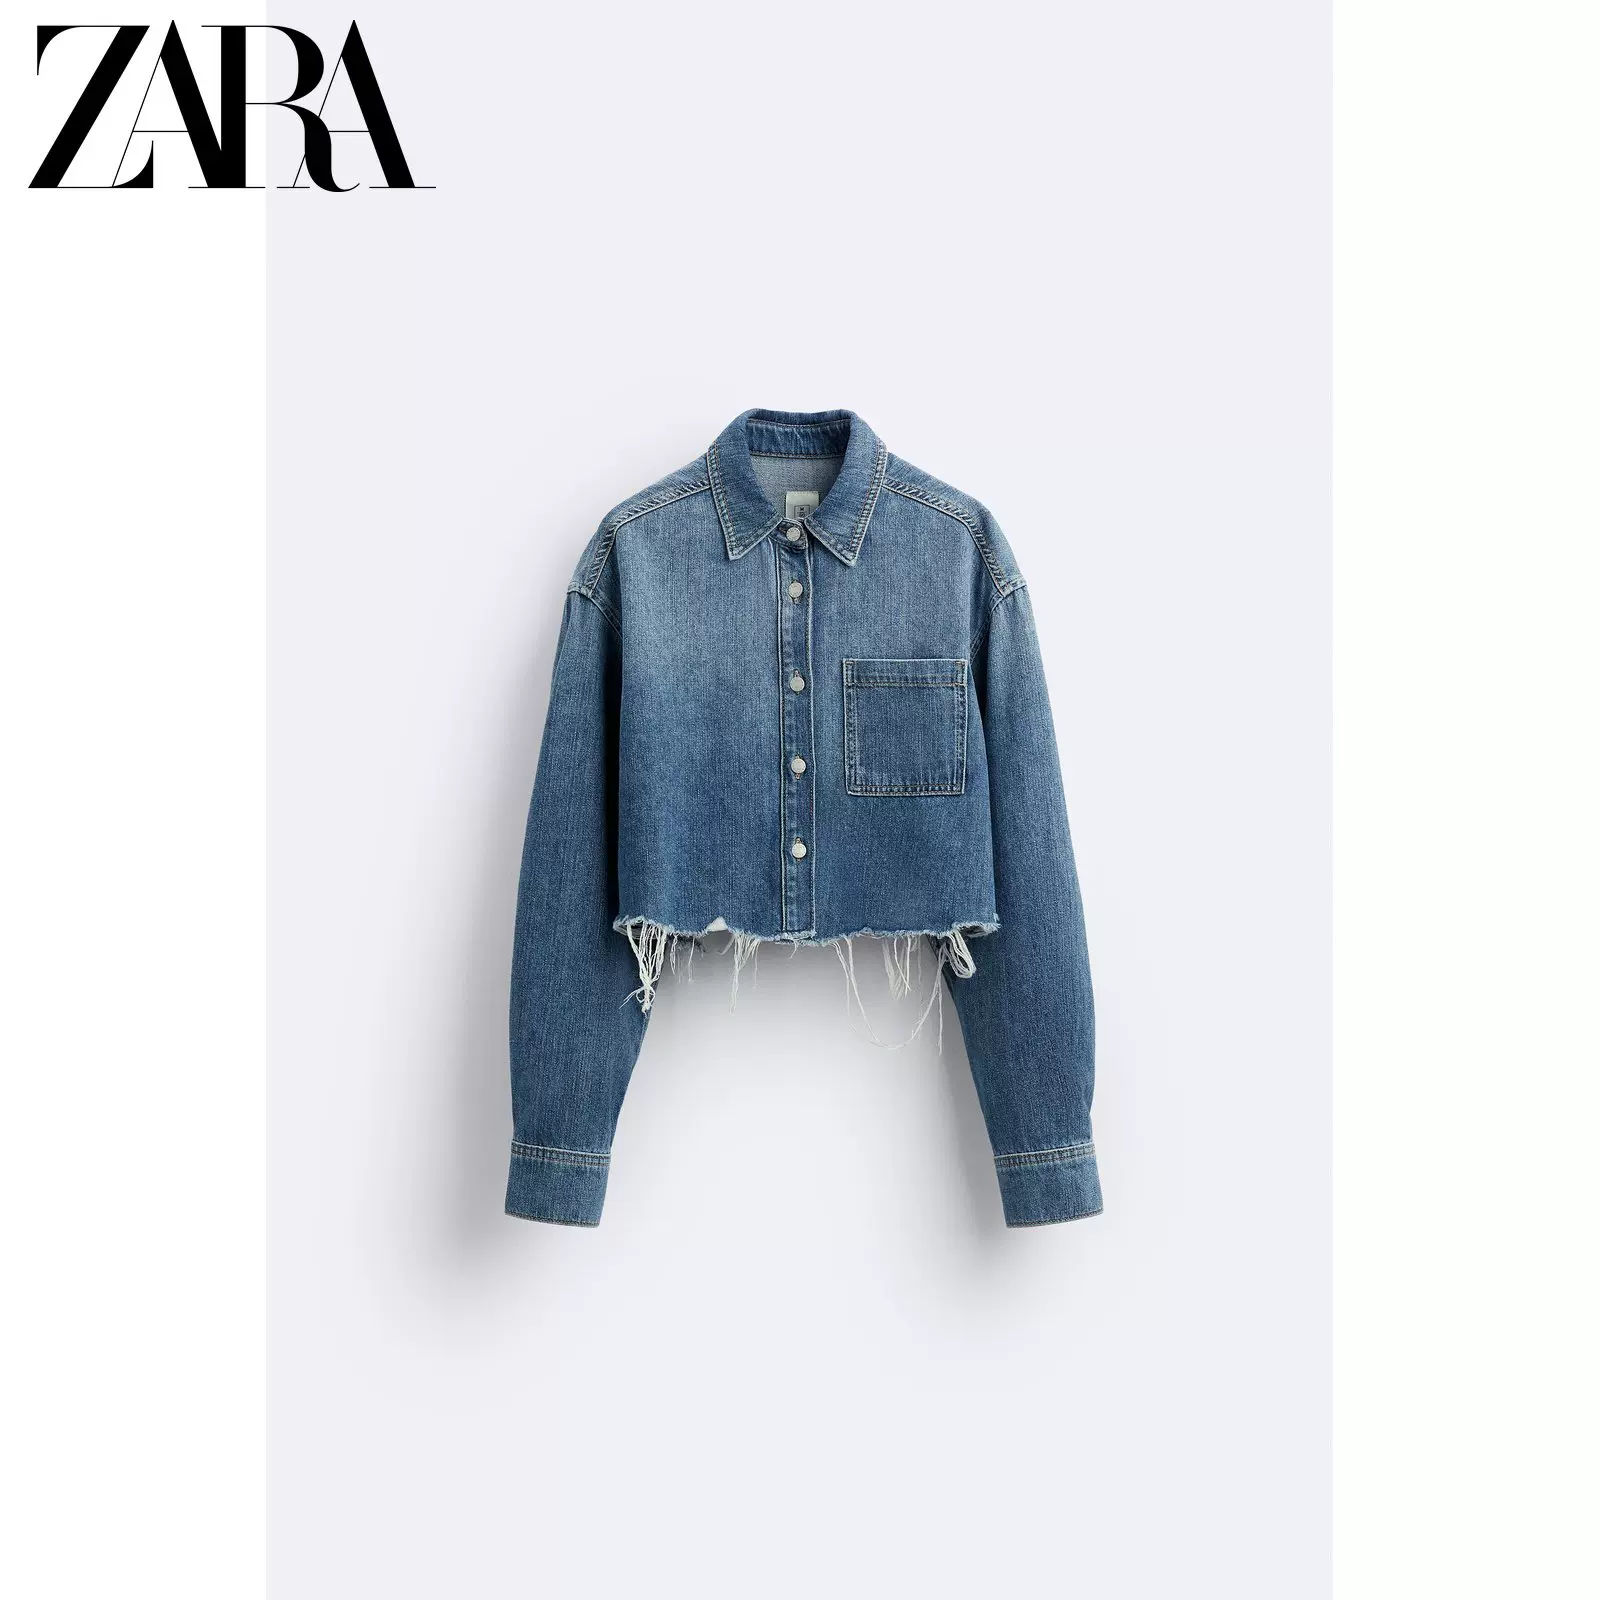 ZARA 新款女装ZW 短款牛仔衬衫X MAISON SPECIAL 6840253 400-Taobao